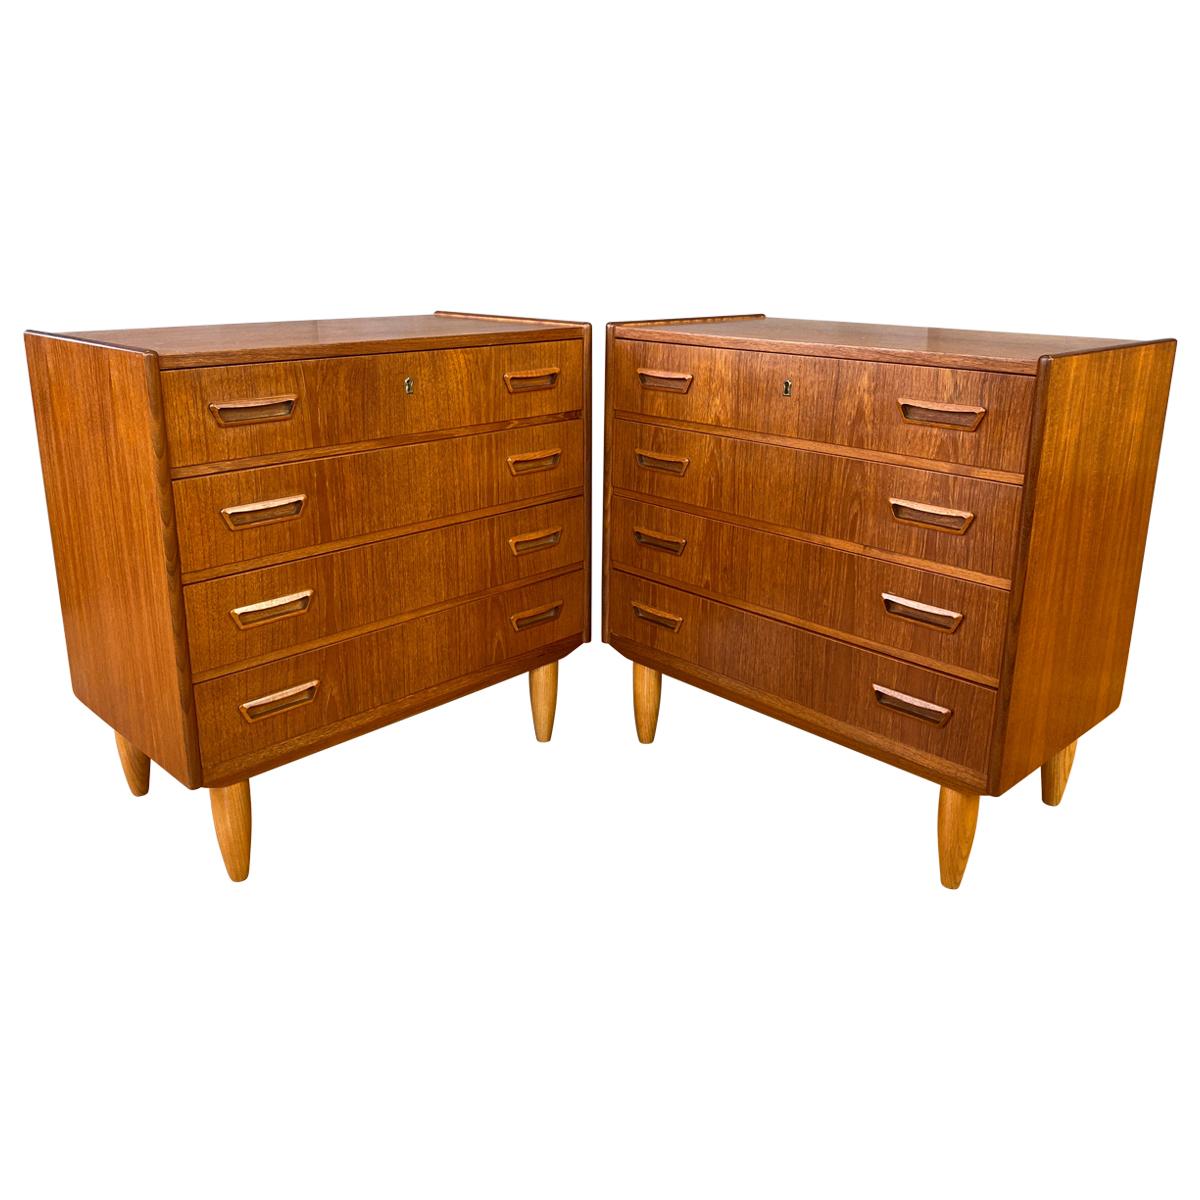 Pair of Vintage Danish Modern Teak Dressers or Nightstands by Dyrlund